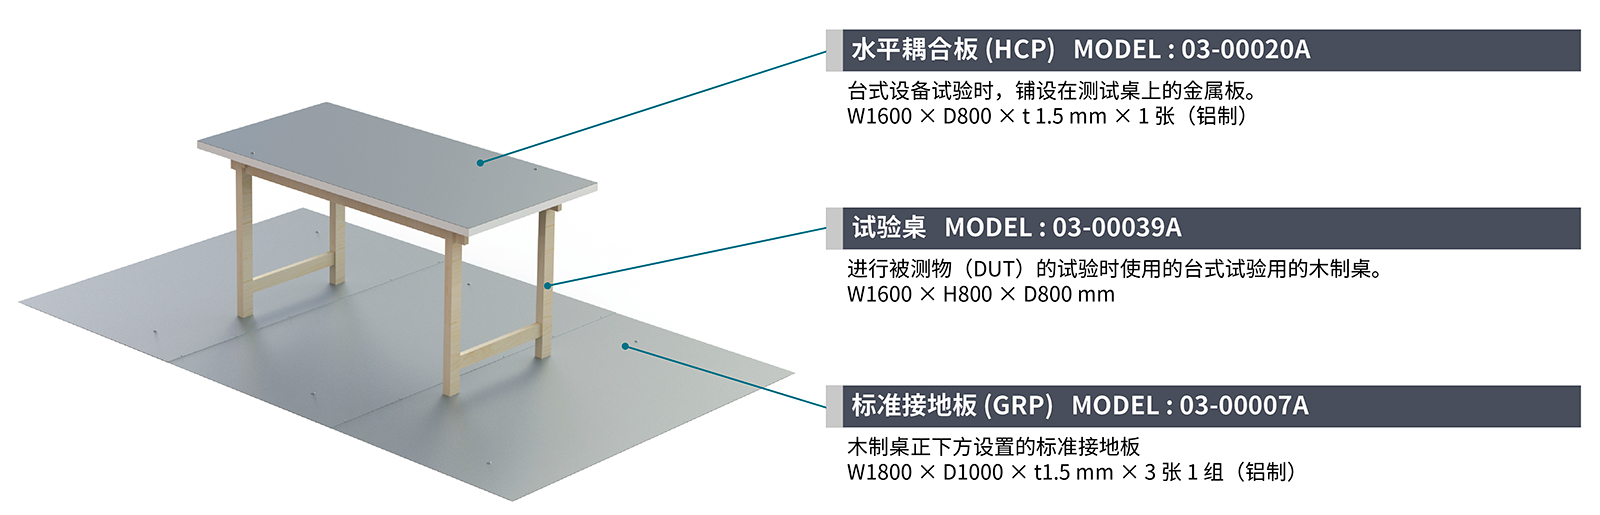 标准接地板 (GRP)　型号 : 03-00007A